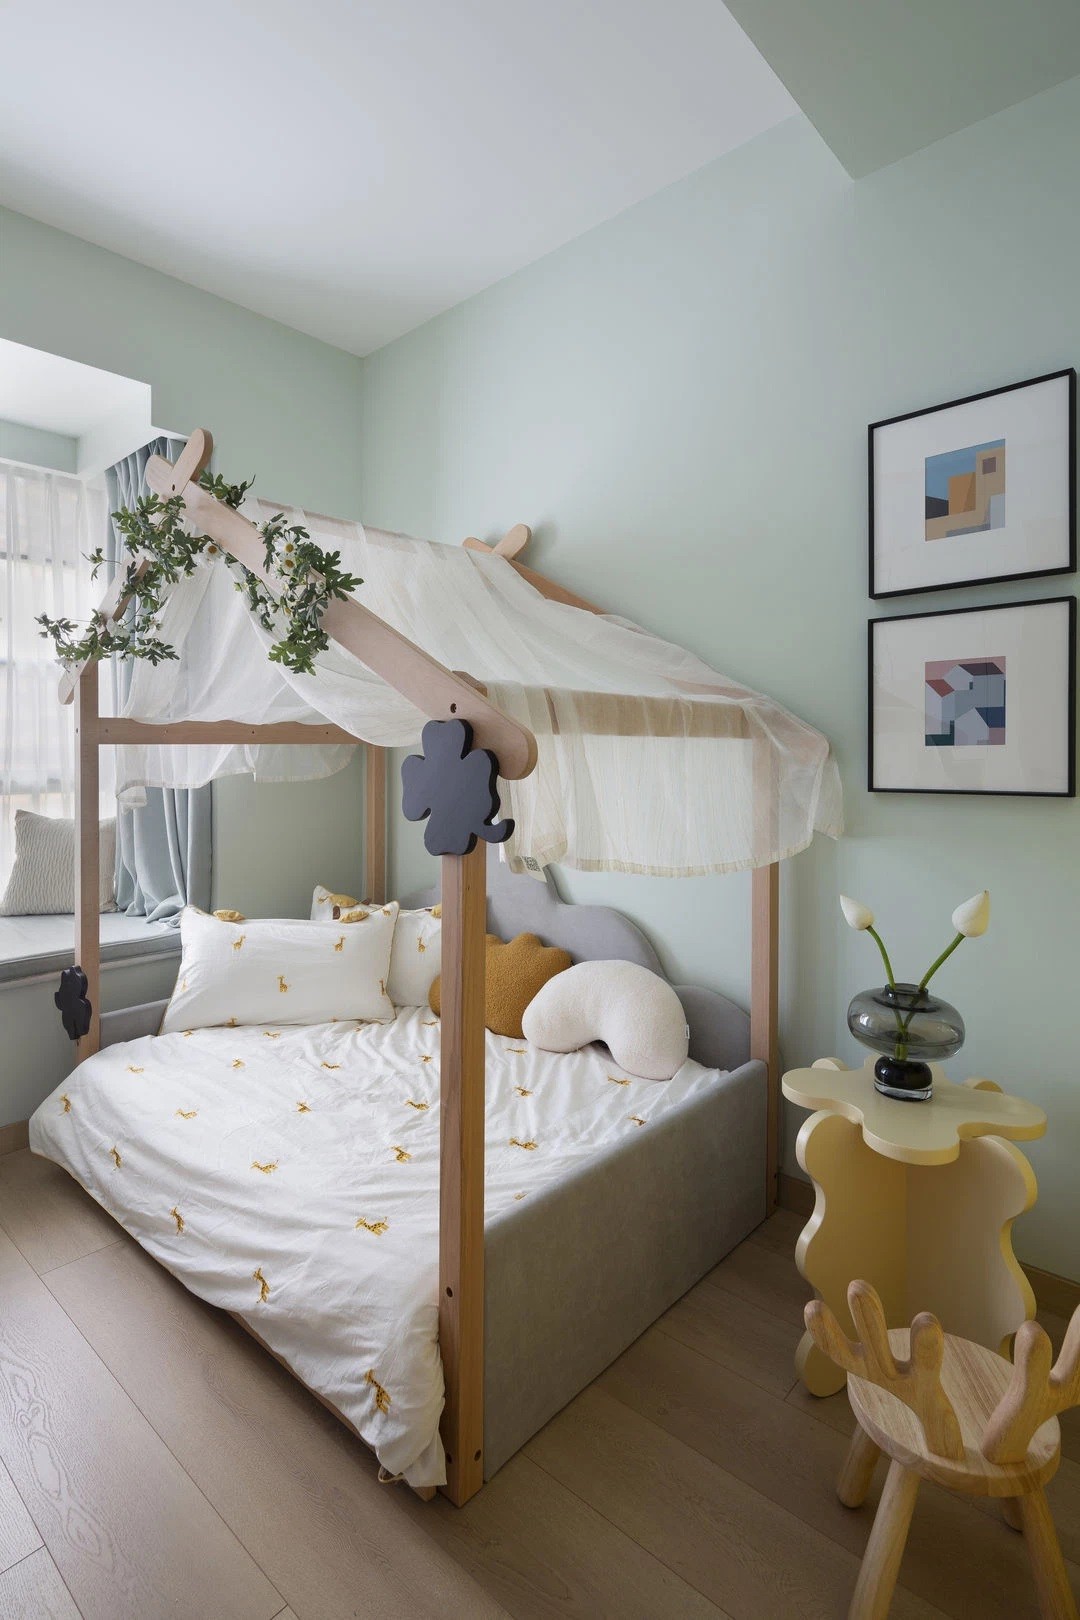 
Phòng ngủ của bé được sử dụng gam màu xanh bạc và và vàng tươi làm màu chủ đạo, mang đến cảm giác tươi mát, đầy sức sống cho căn phòng
